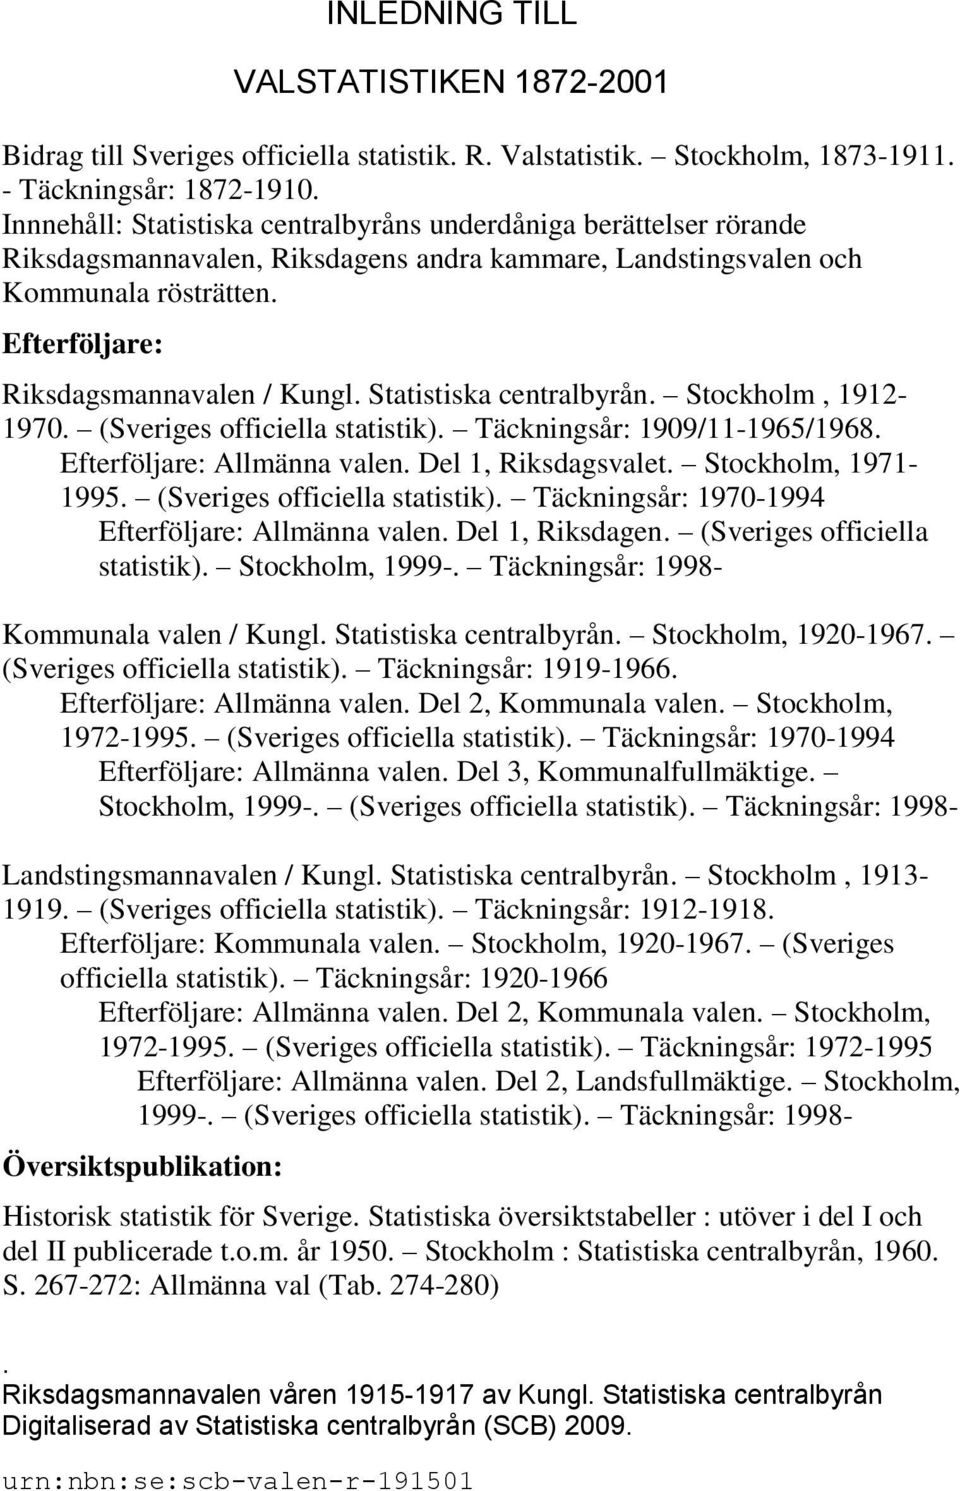 Statistiska centralbyrån. Stockholm, 1912-1970. (Sveriges officiella statistik). Täckningsår: 1909/11-1965/1968. Efterföljare: Allmänna valen. Del 1, Riksdagsvalet. Stockholm, 1971-1995.